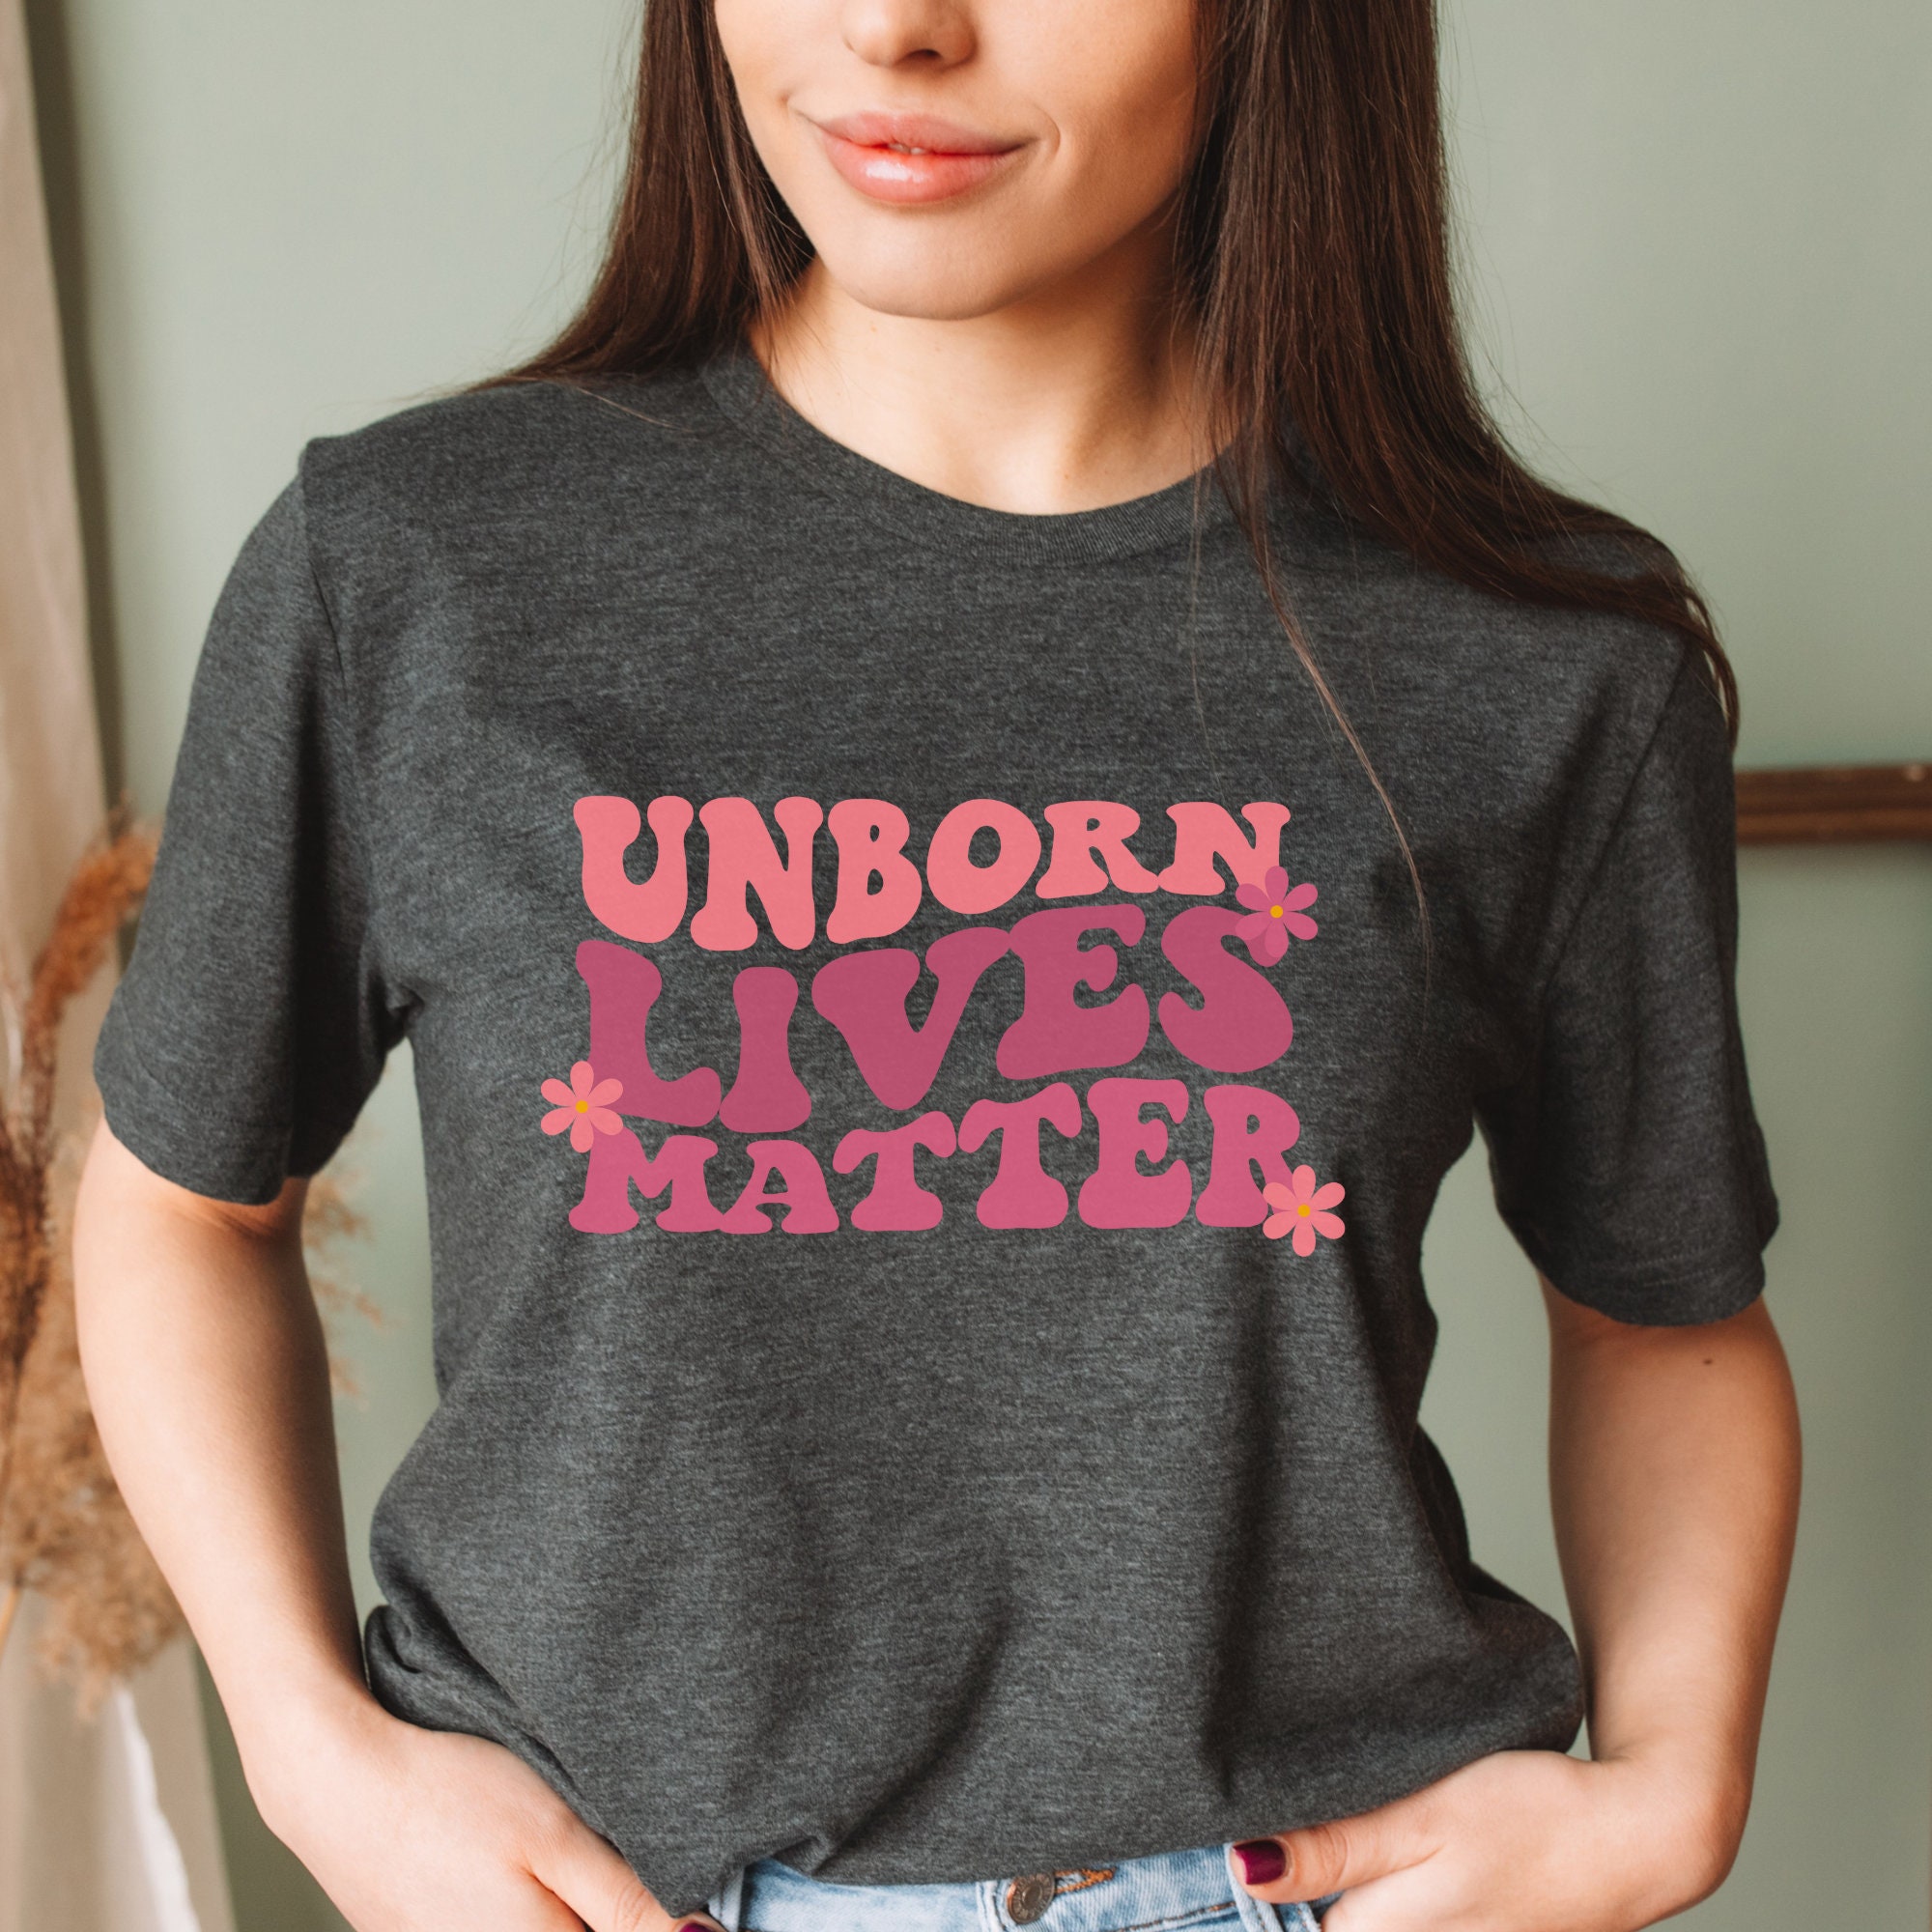 Unborn Lives Matter T-shirt, Babies Lives Matter Shirt, Prolife